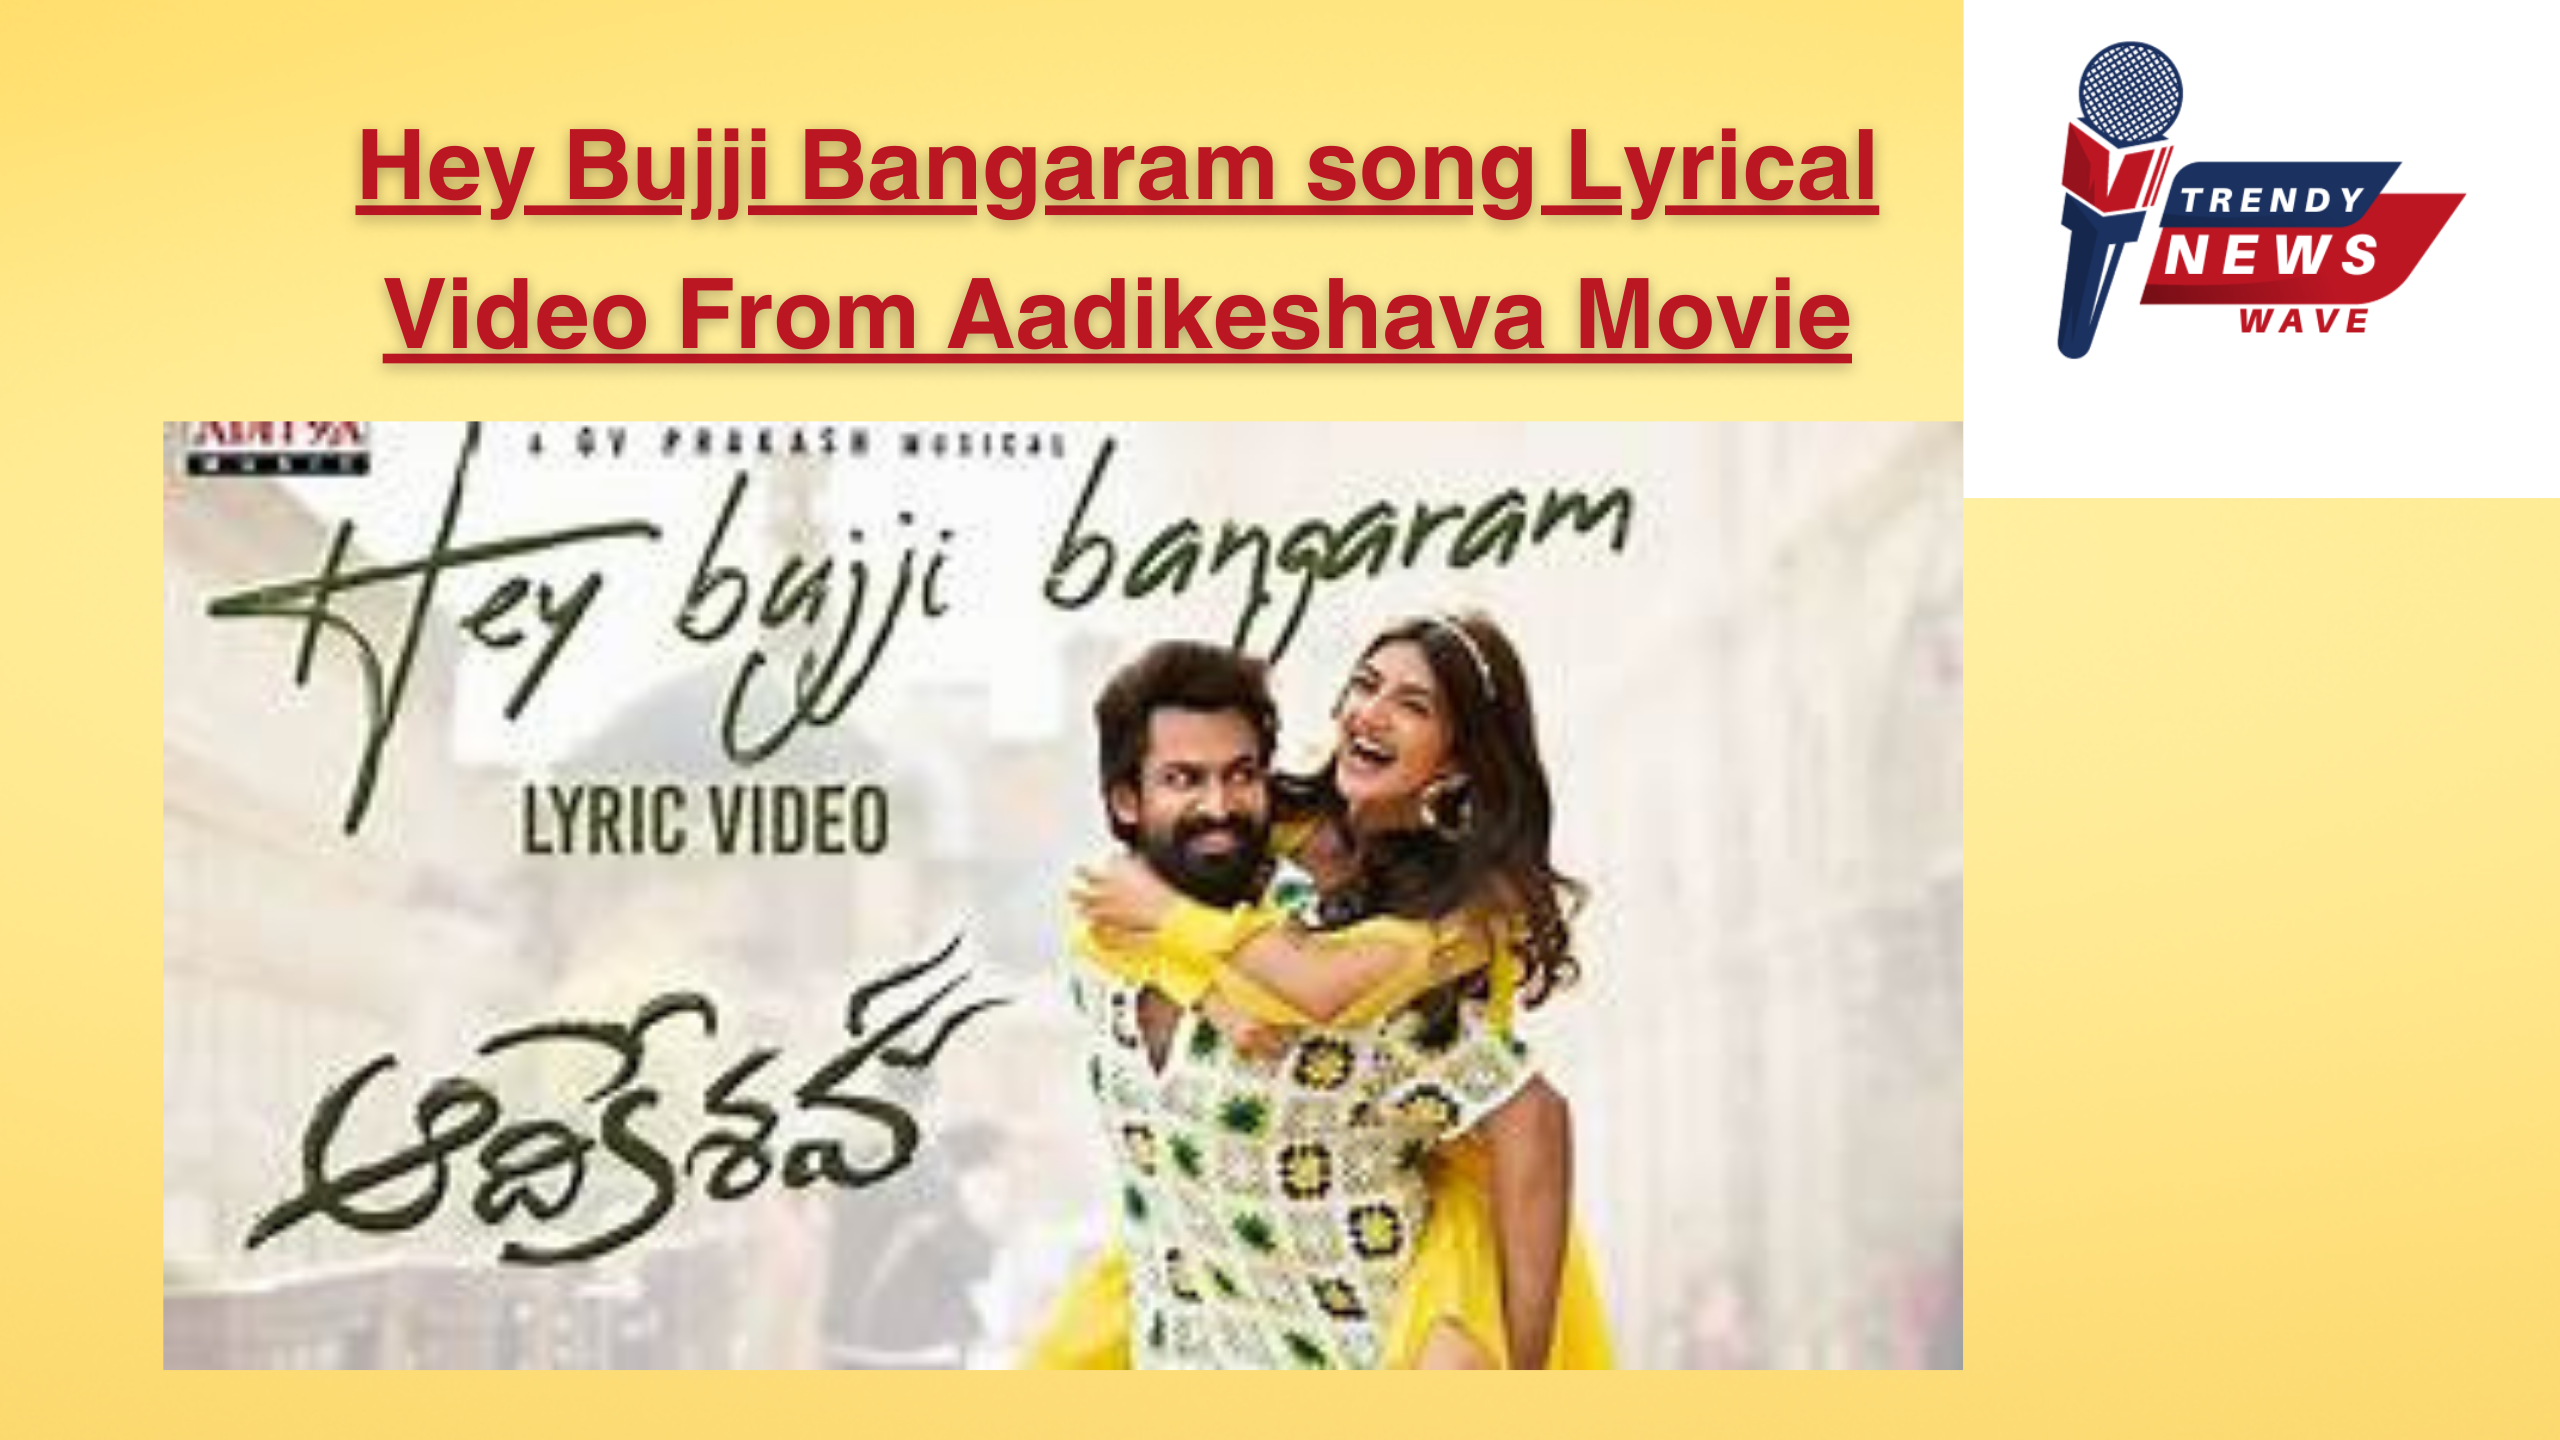 Hey Bujji Bangaram song Lyrical Video From Aadikeshava Movie